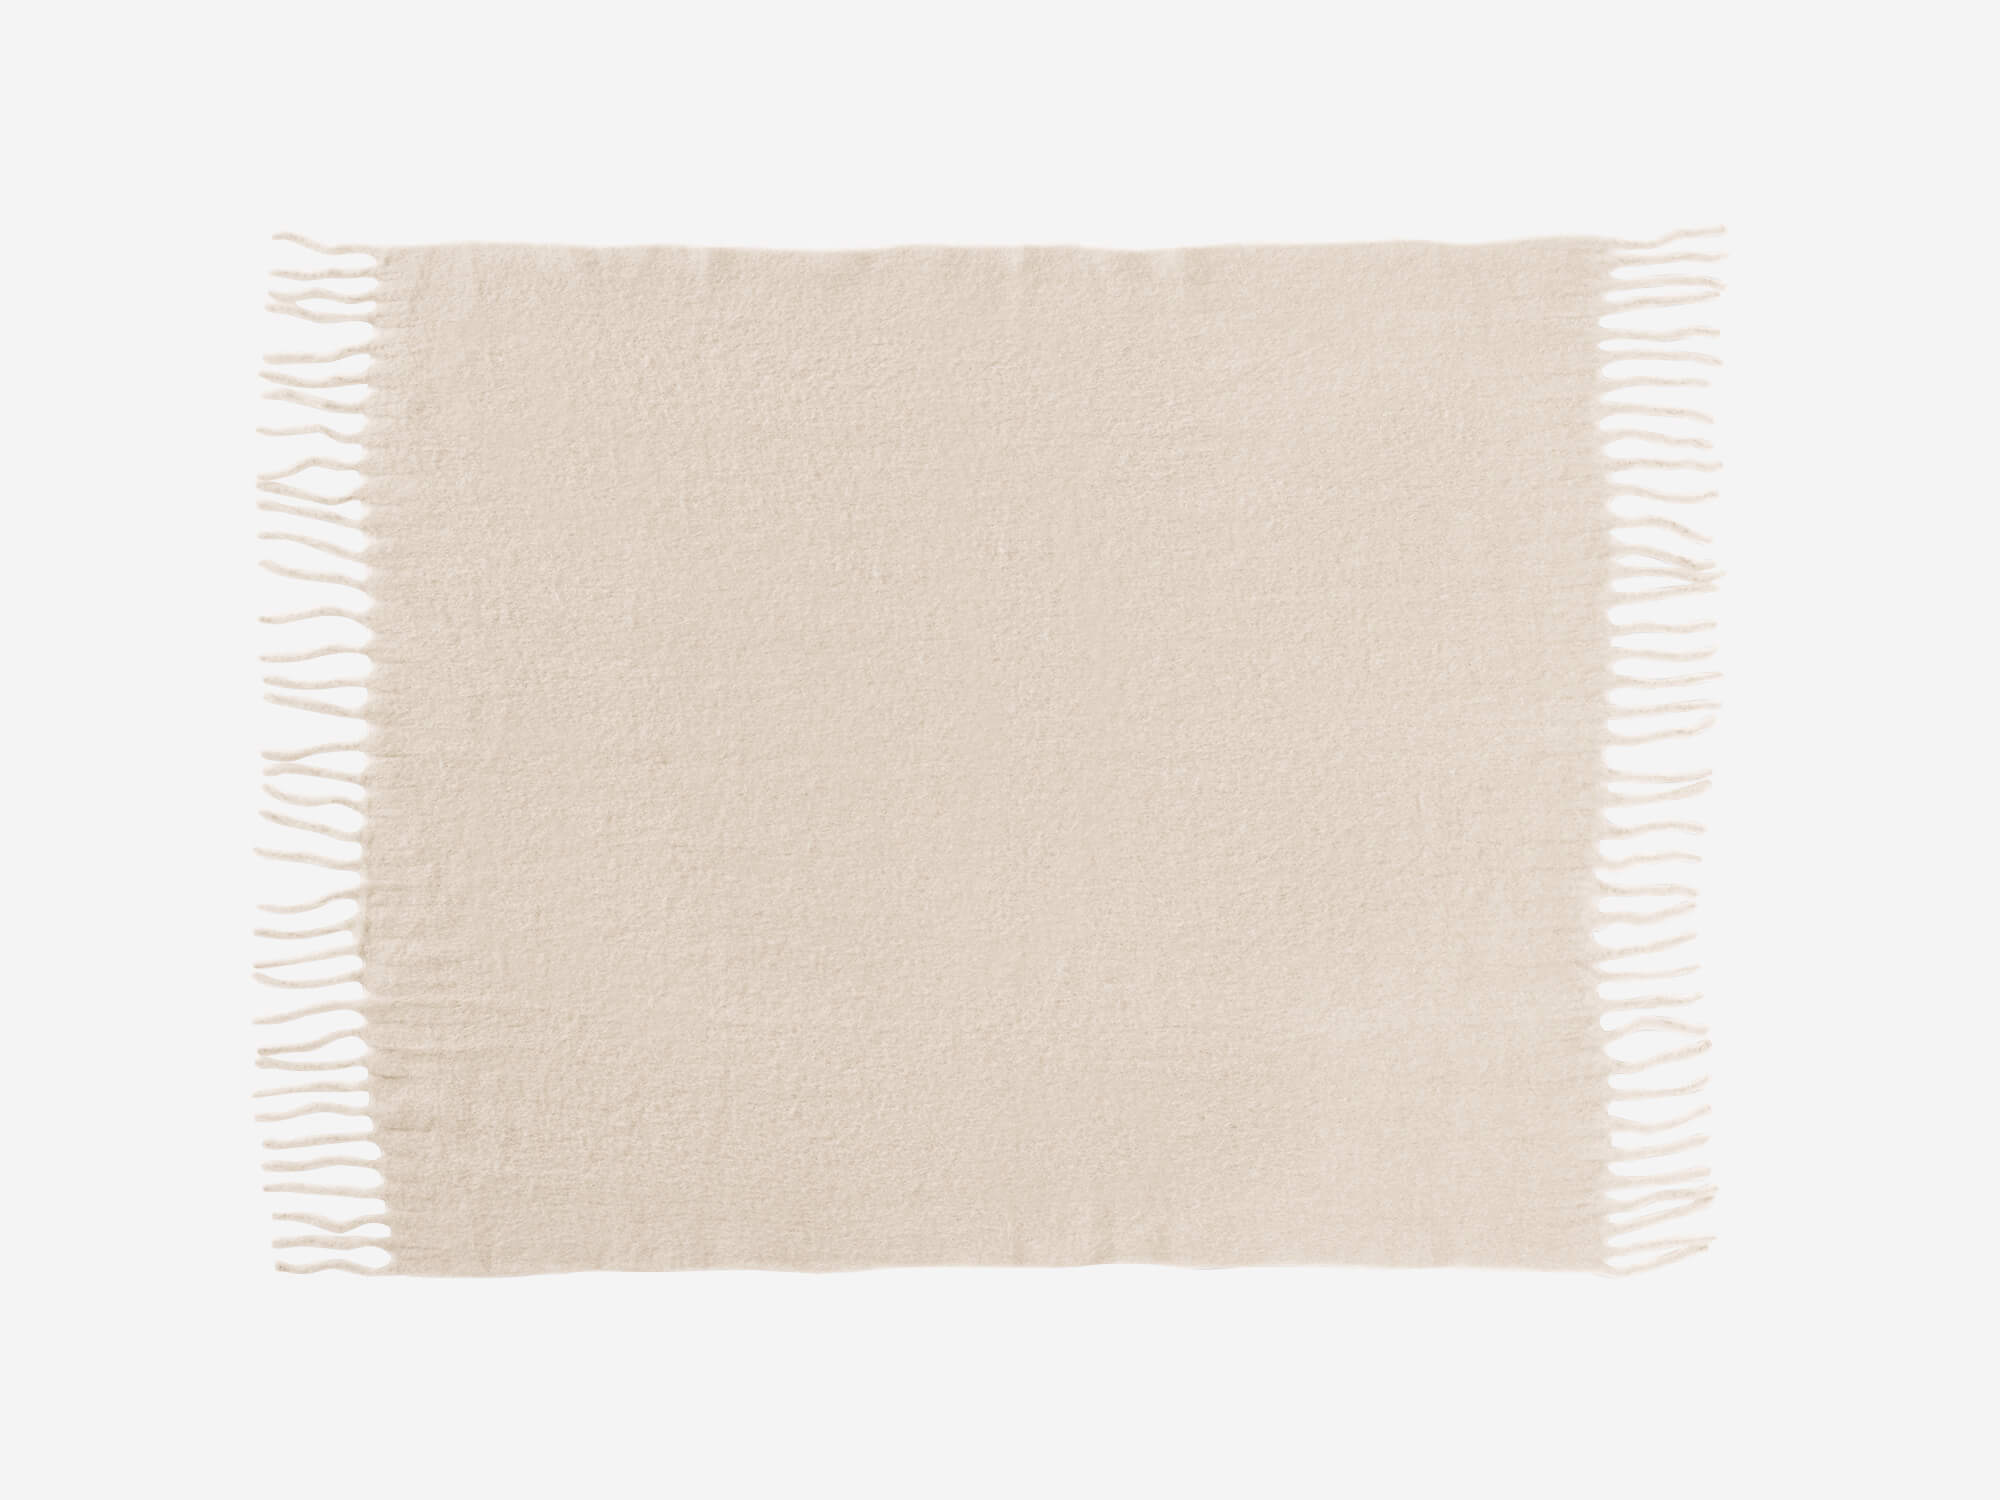 Lv Blankets ราคาถูก ซื้อออนไลน์ที่ - ก.ย. 2023